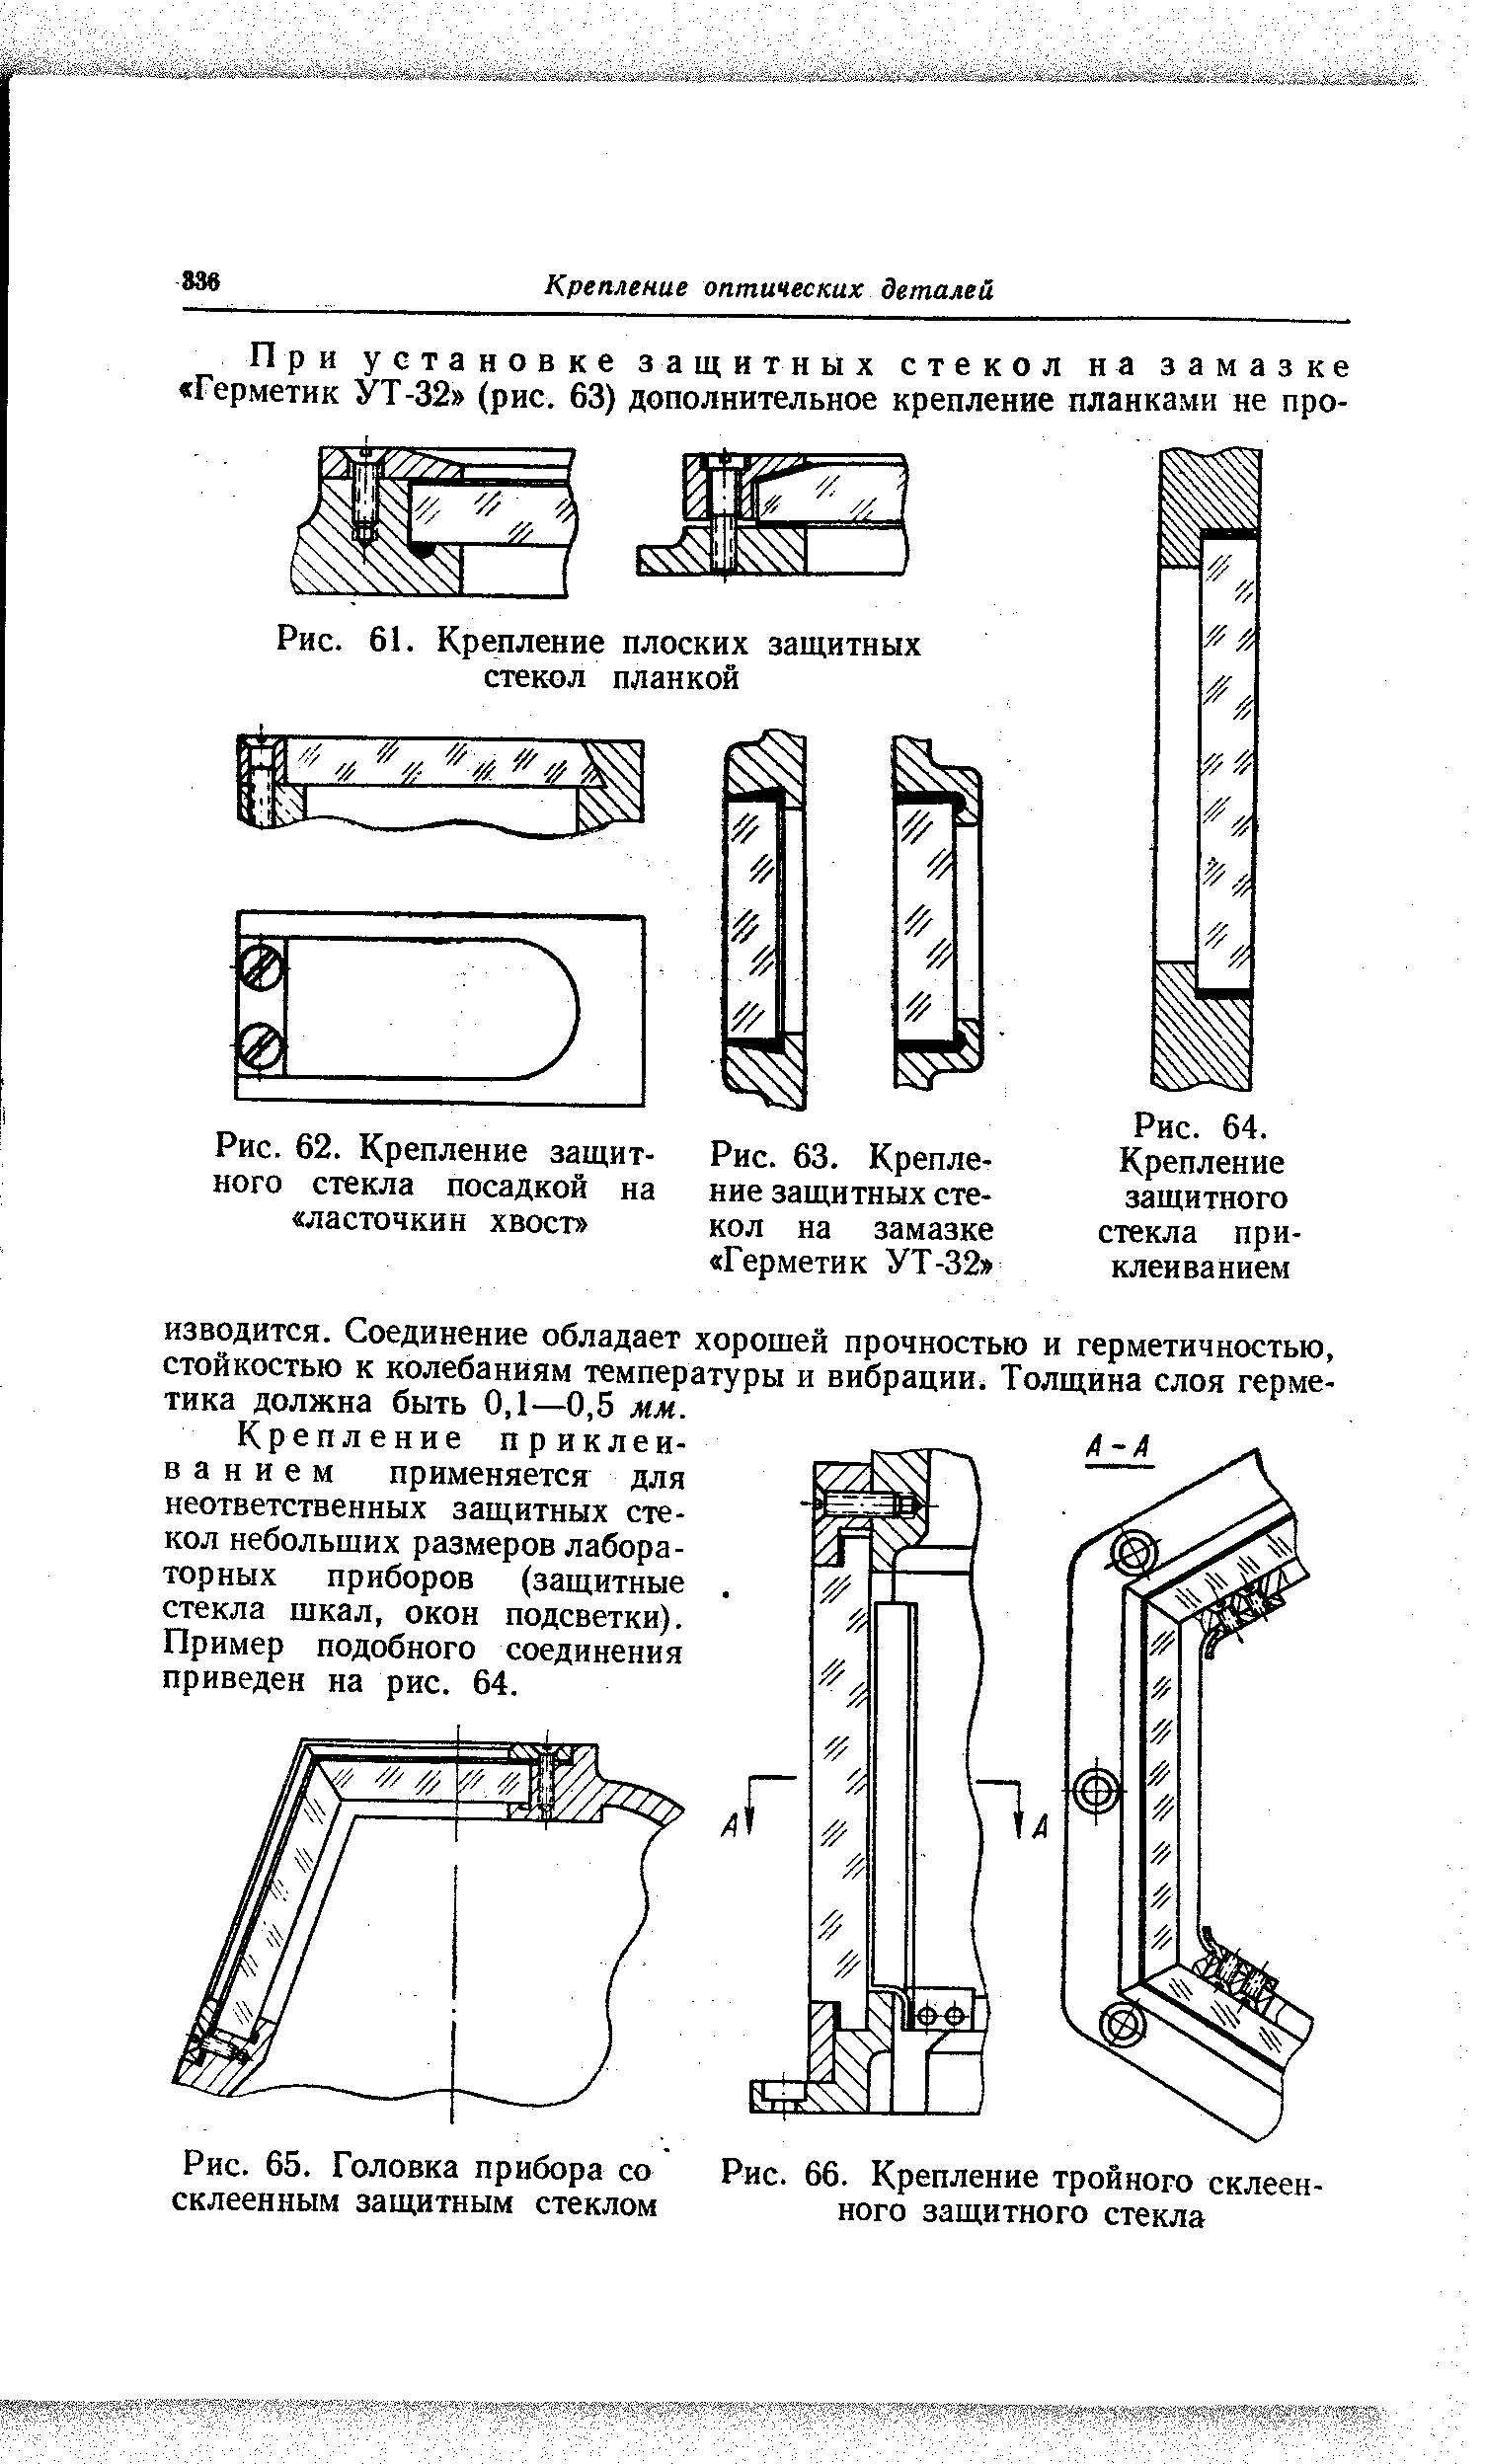 Рис. 63. Крепление защитных стекол на замазке Герметик УТ-32 
